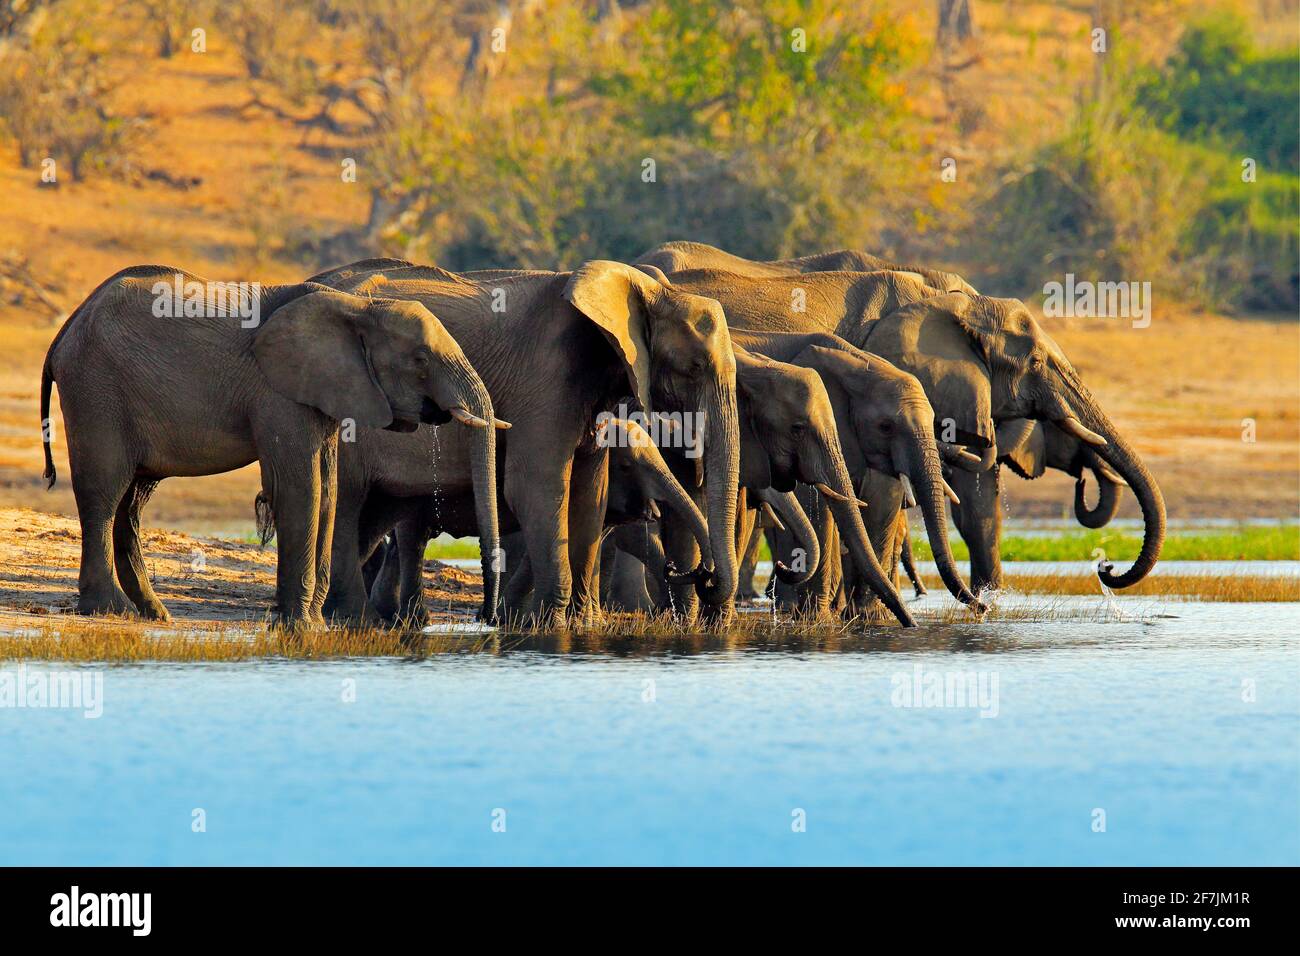 Wildlife-Szene aus der Natur. Eine Herde afrikanischer Elefanten trinkt an einem Wasserloch, das ihre Stämme hebt, Chobe National Park, Botswana, Afrika Stockfoto